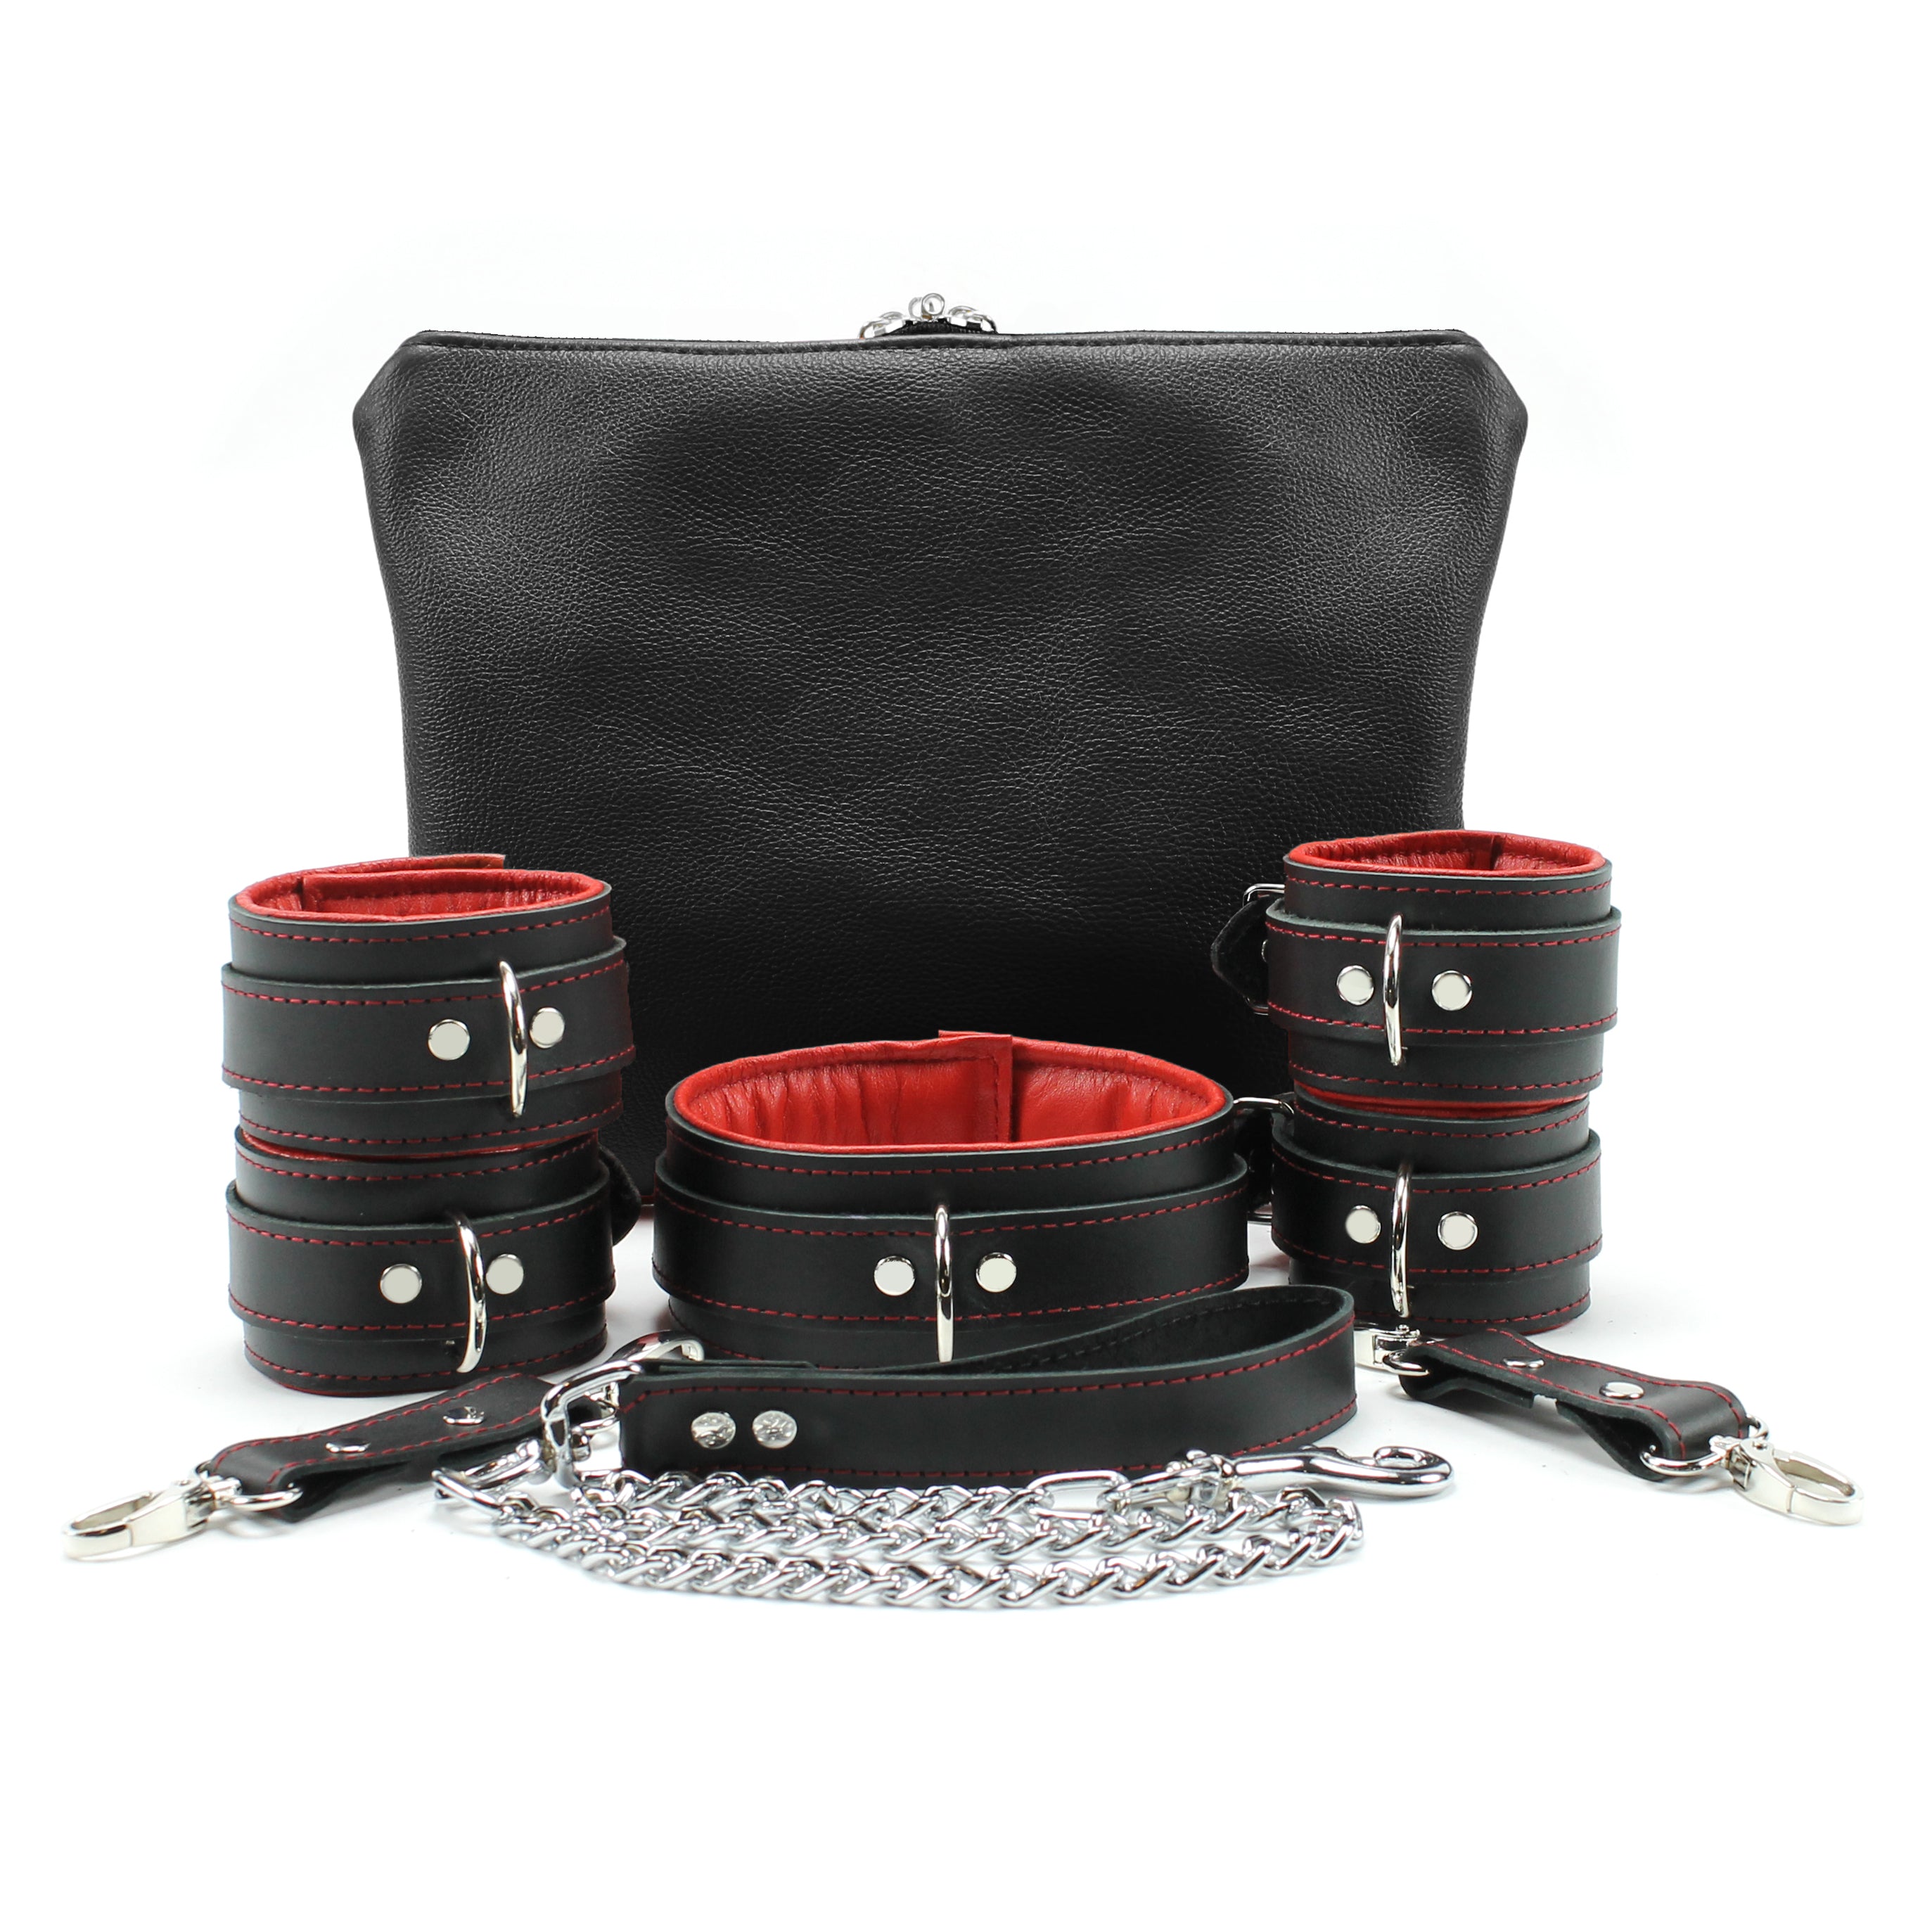 BDSM Set Premium Restraints, Luxury Leather Bondage, BDSM Gear